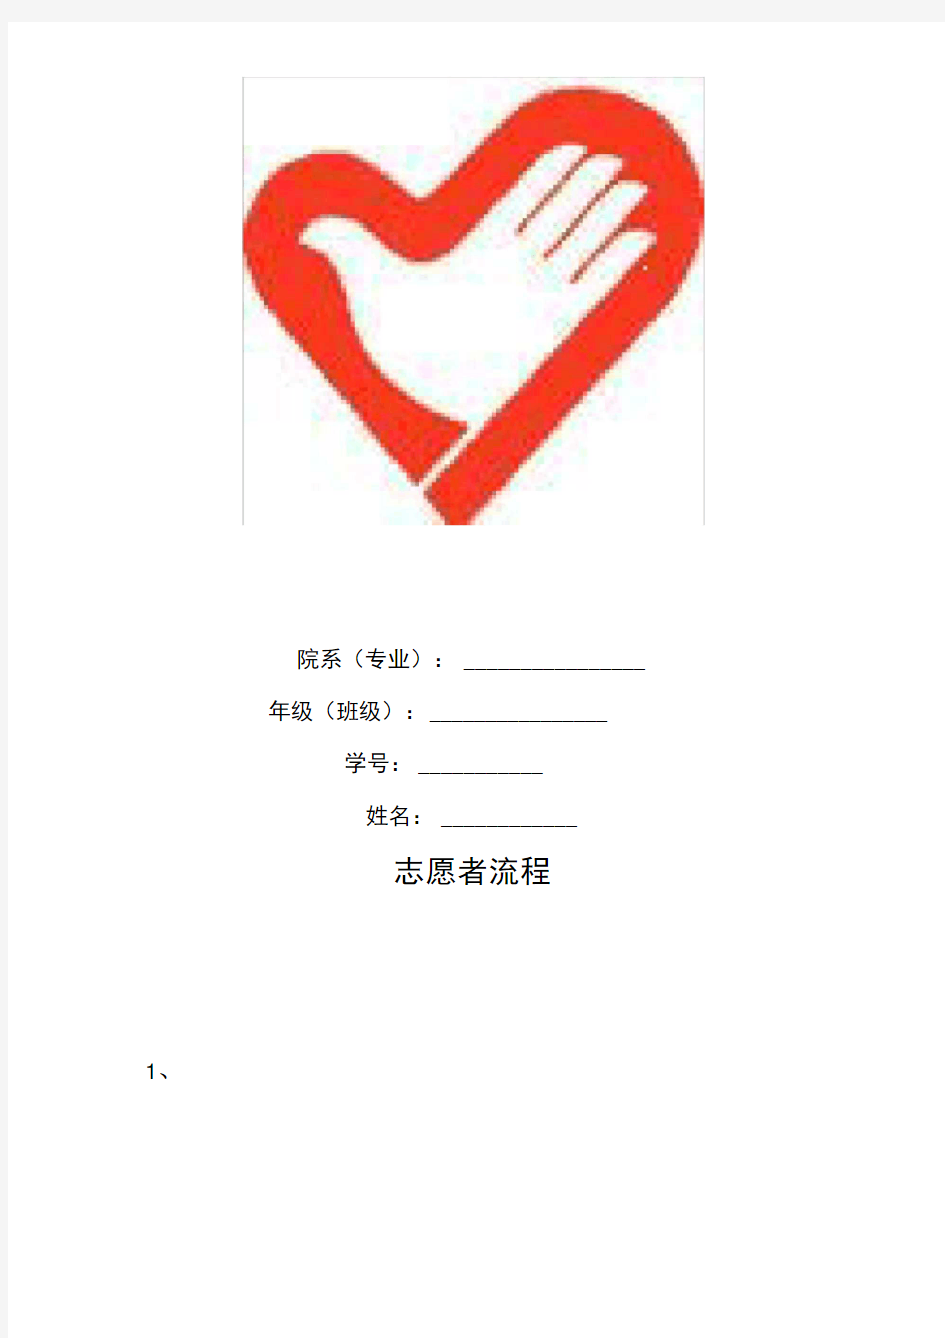 重庆医科大学青年志愿者服务手册